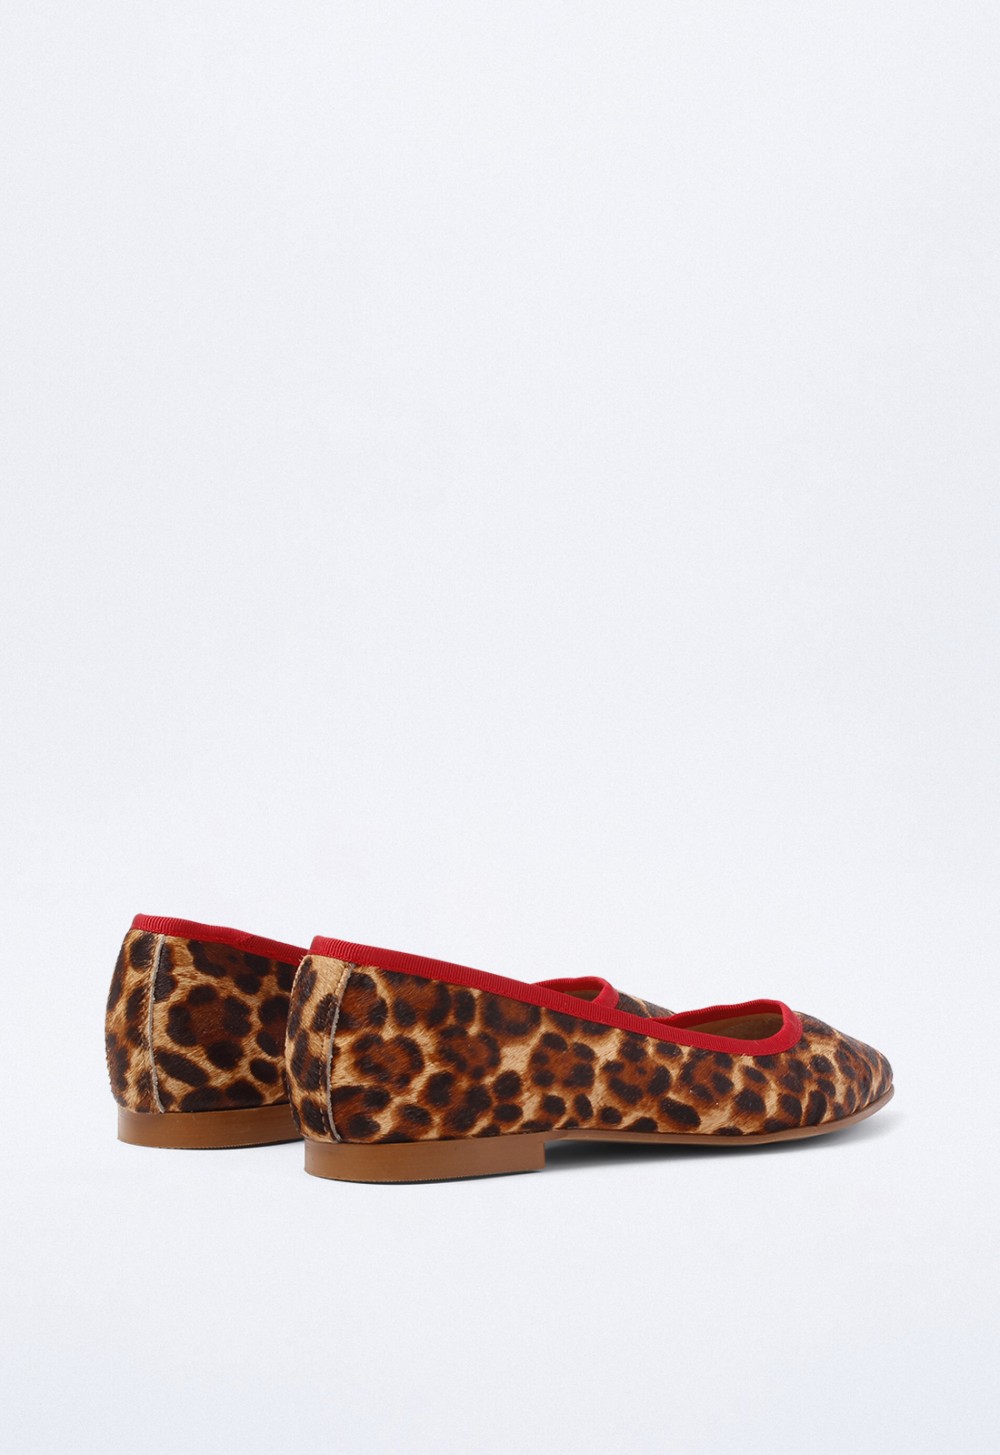 Zapato de mujer leopardo